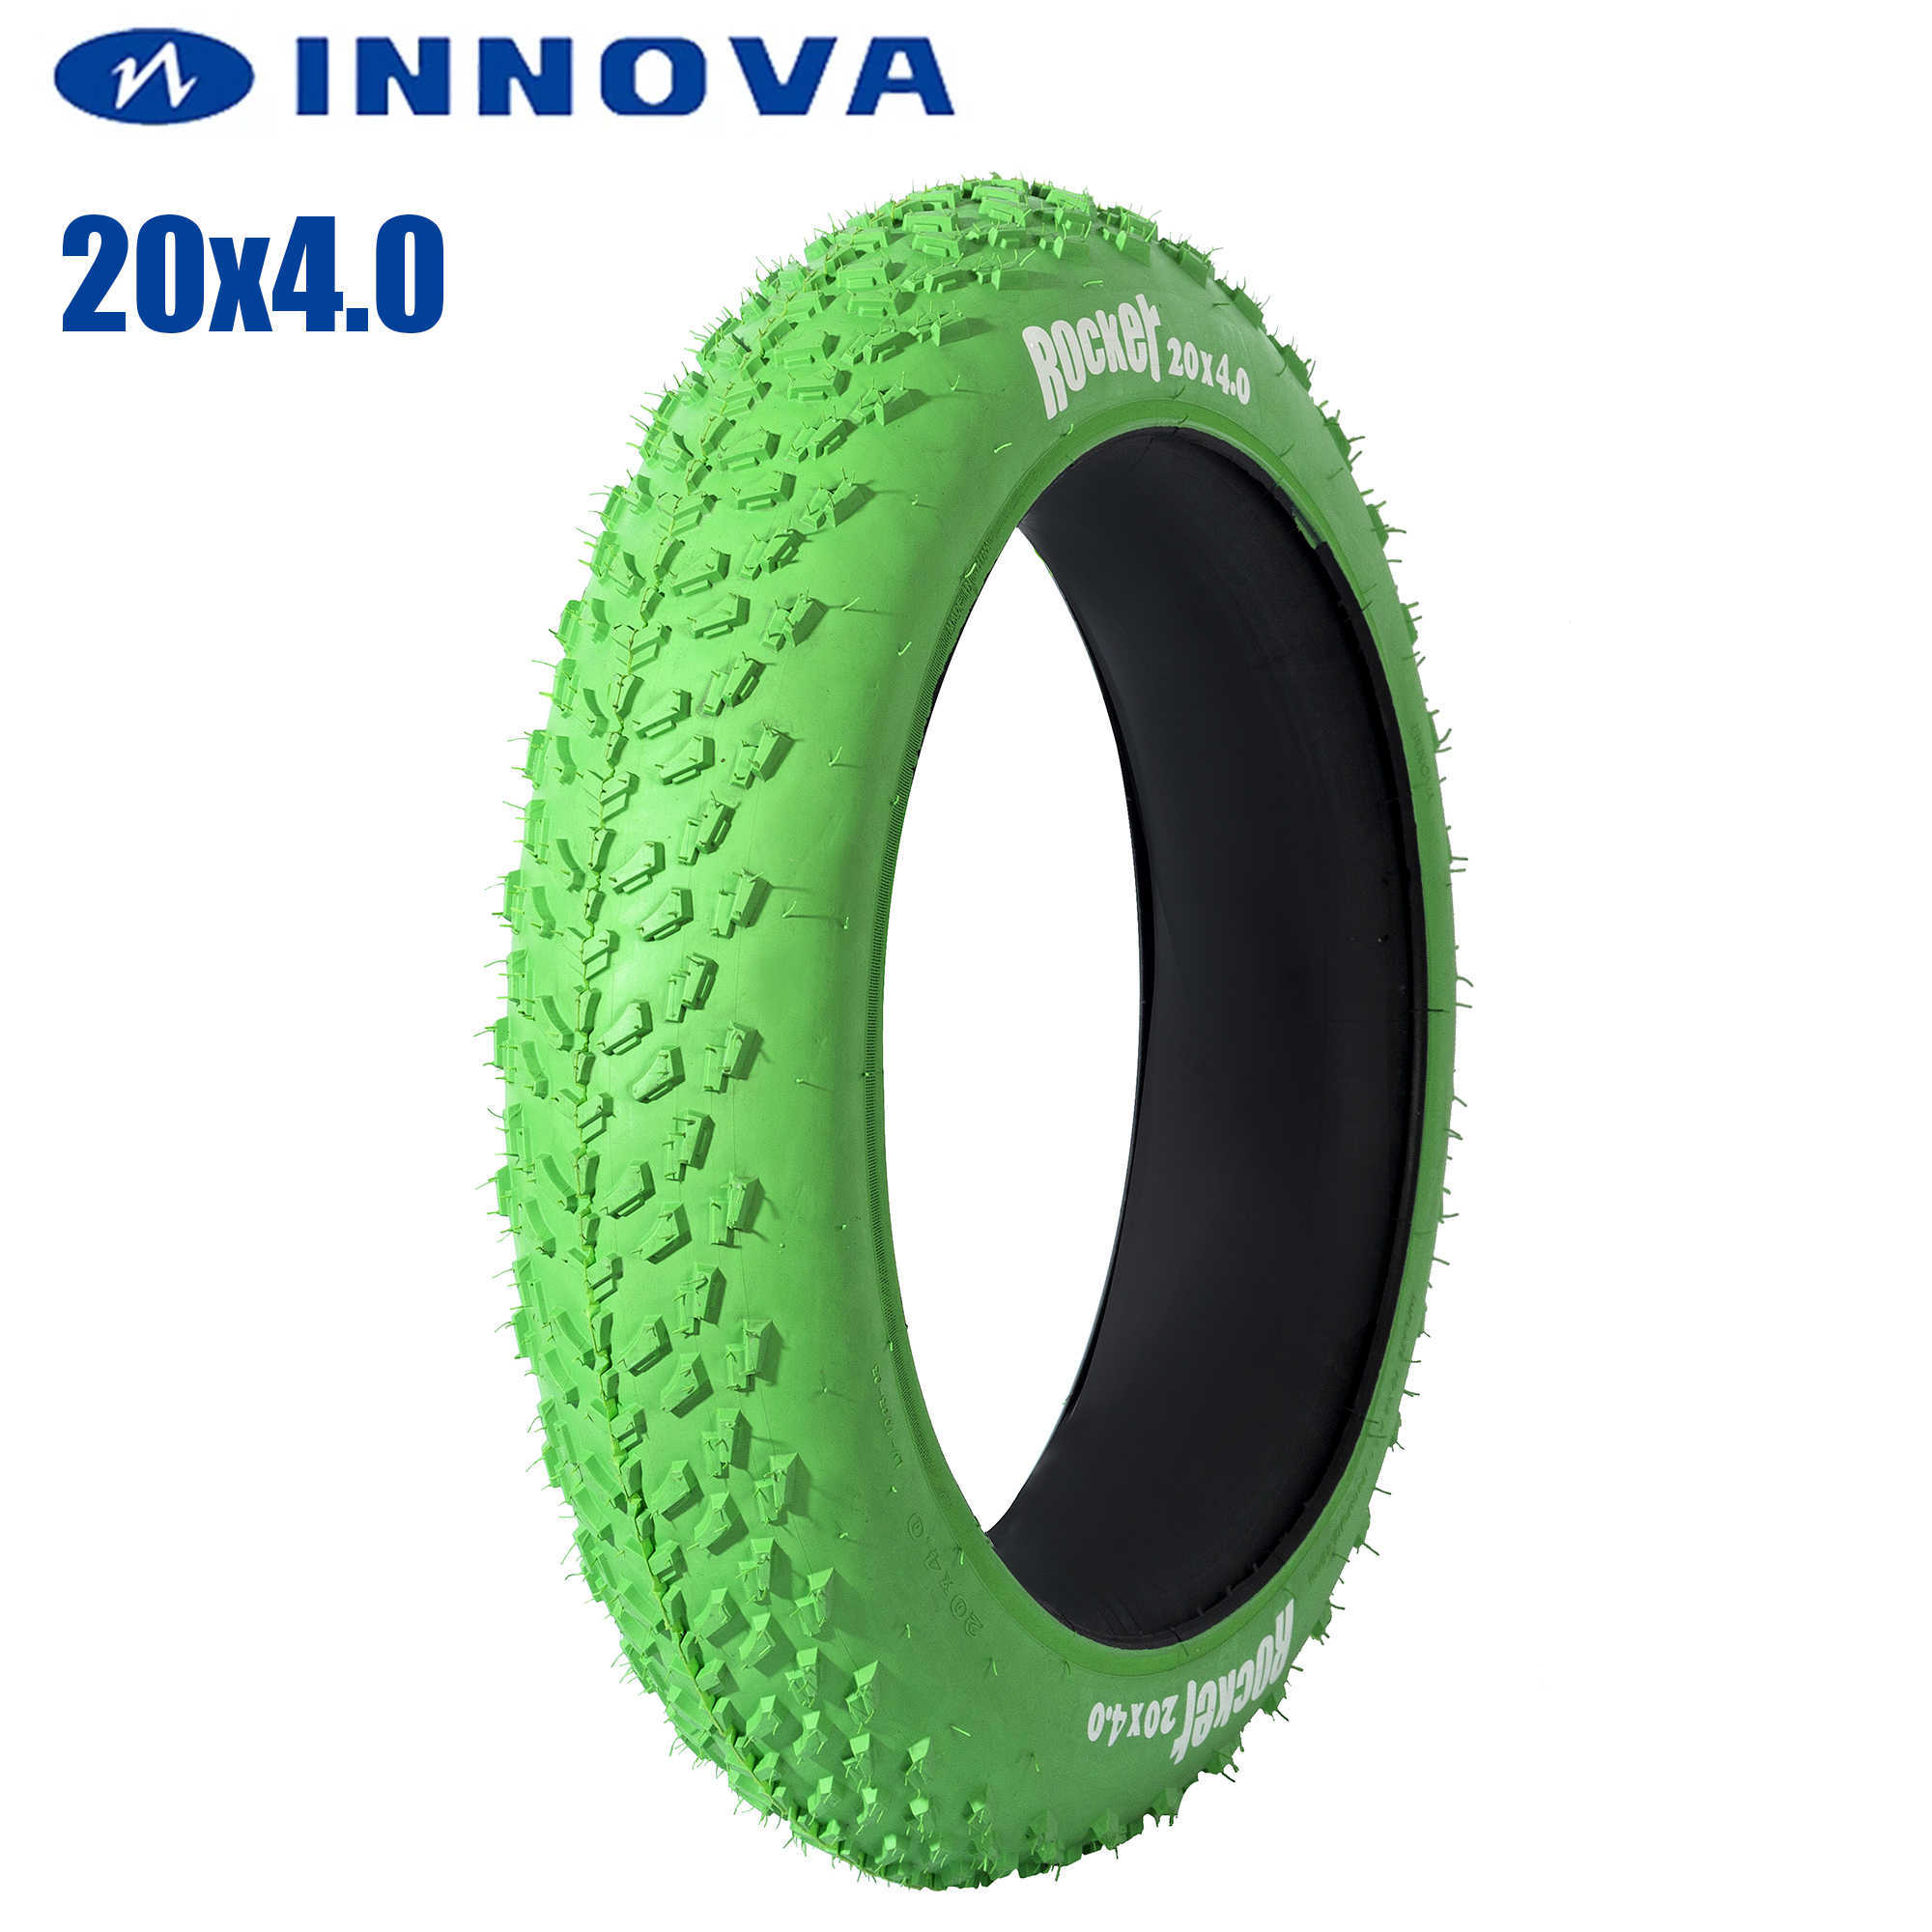 S Innova 20x4.0電動自転車タイヤMTBタイヤビーチ20*4.0シティファットタイヤスノーマウンテンバイクパーツ0213